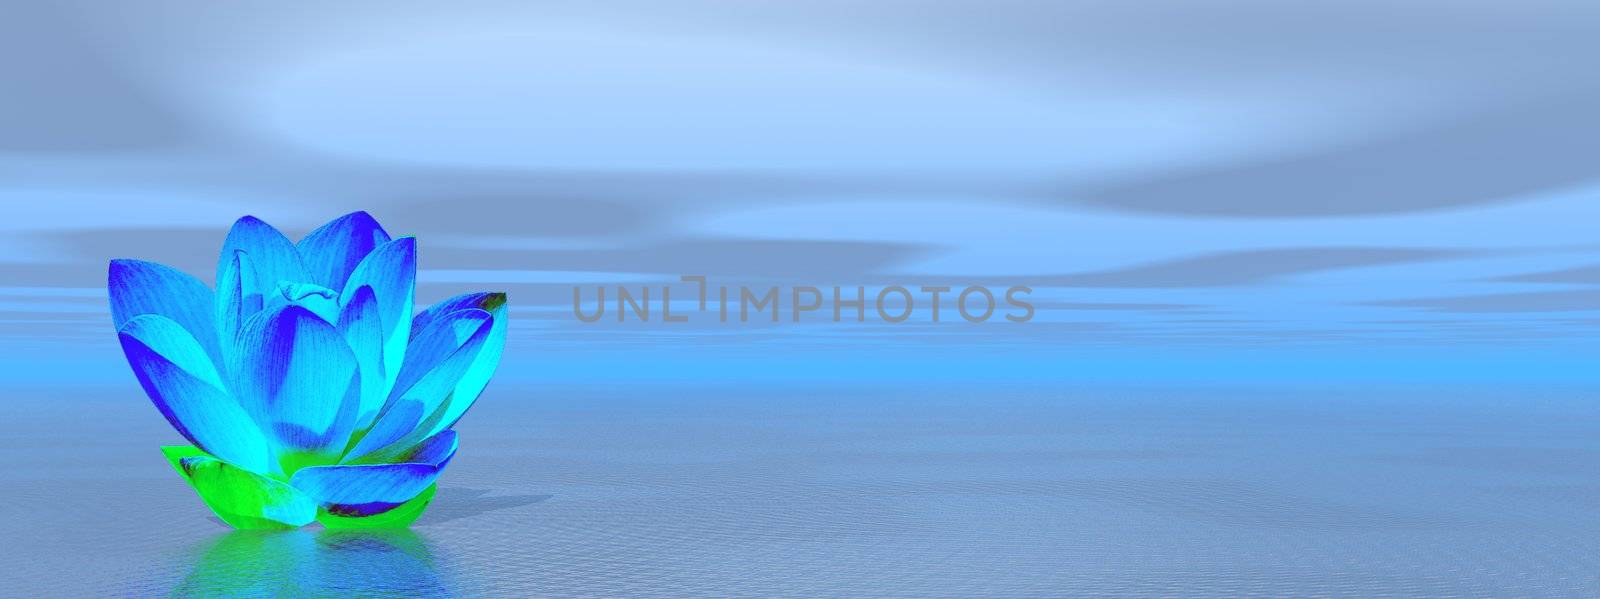 Lily flower in blue ocean by Elenaphotos21